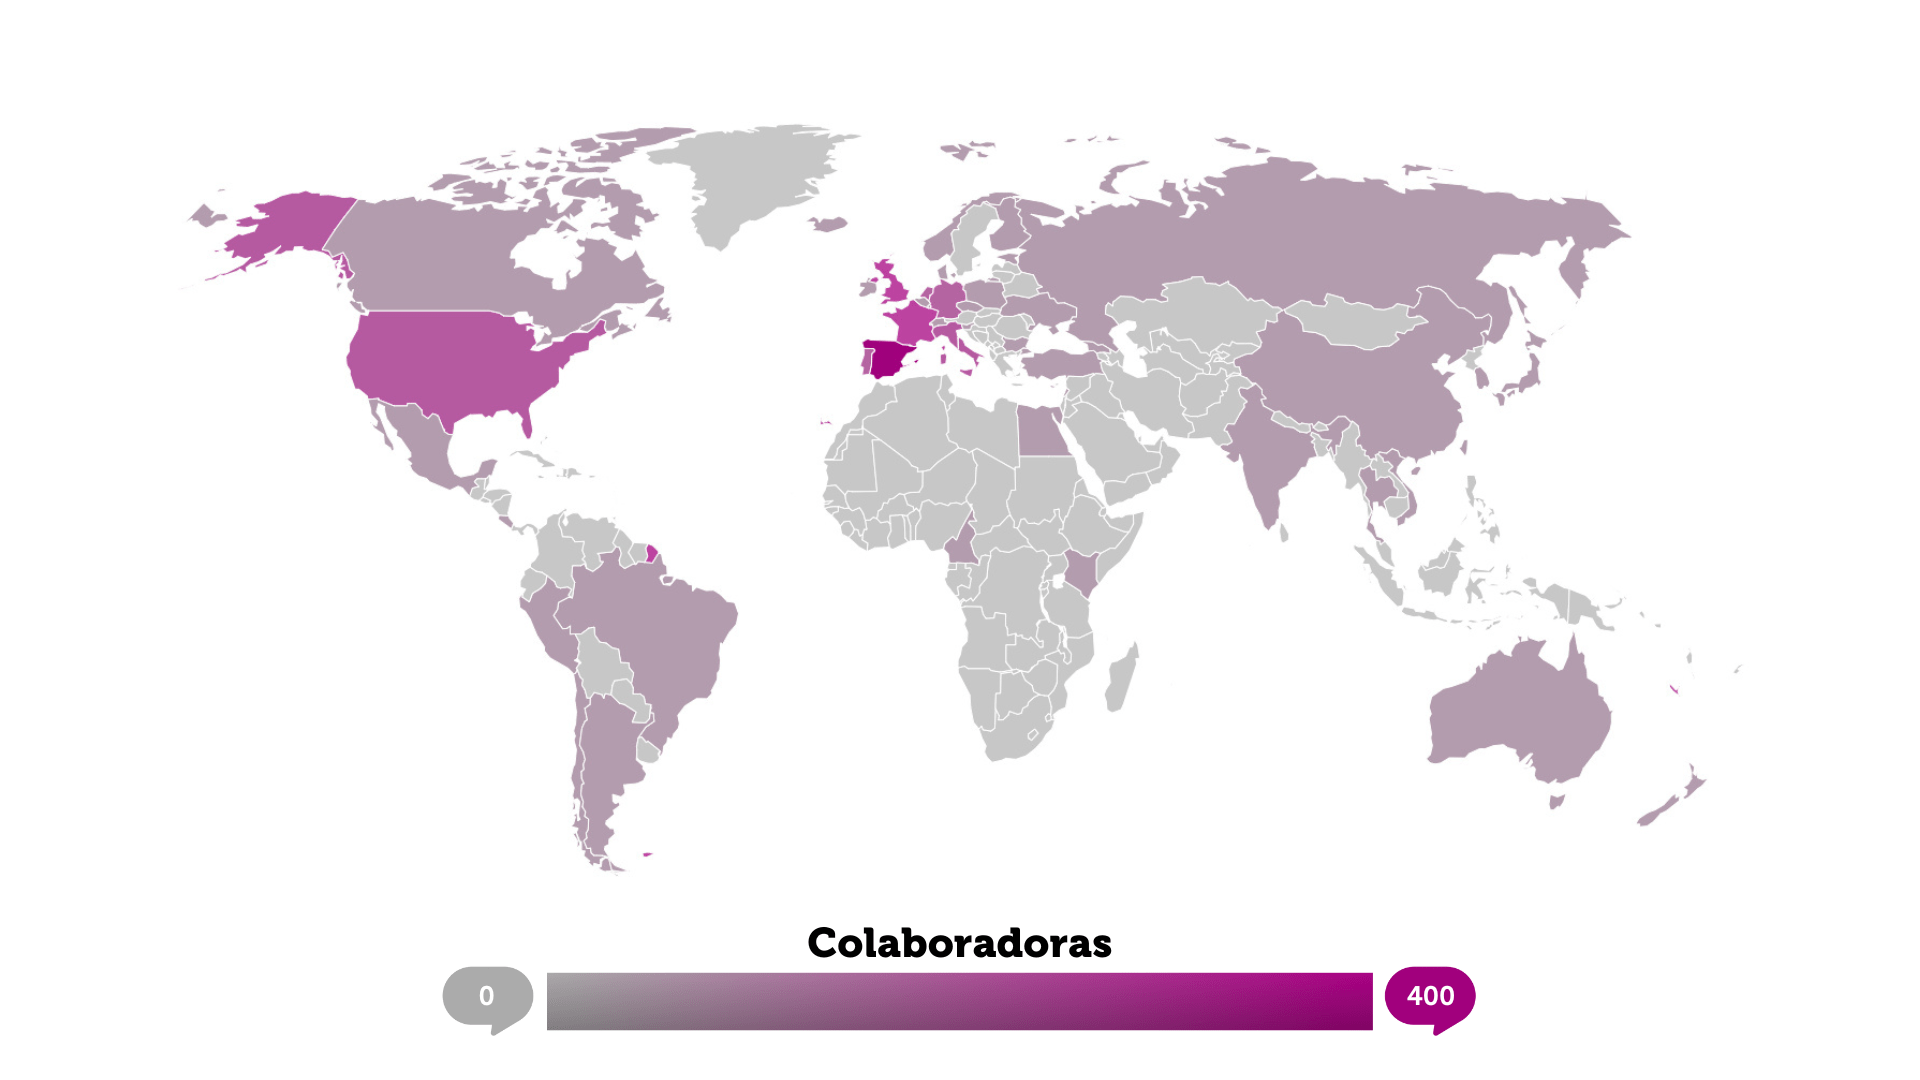 Mapa en el que salen marcados en morados los países de donde proceden nuestros colaboradores